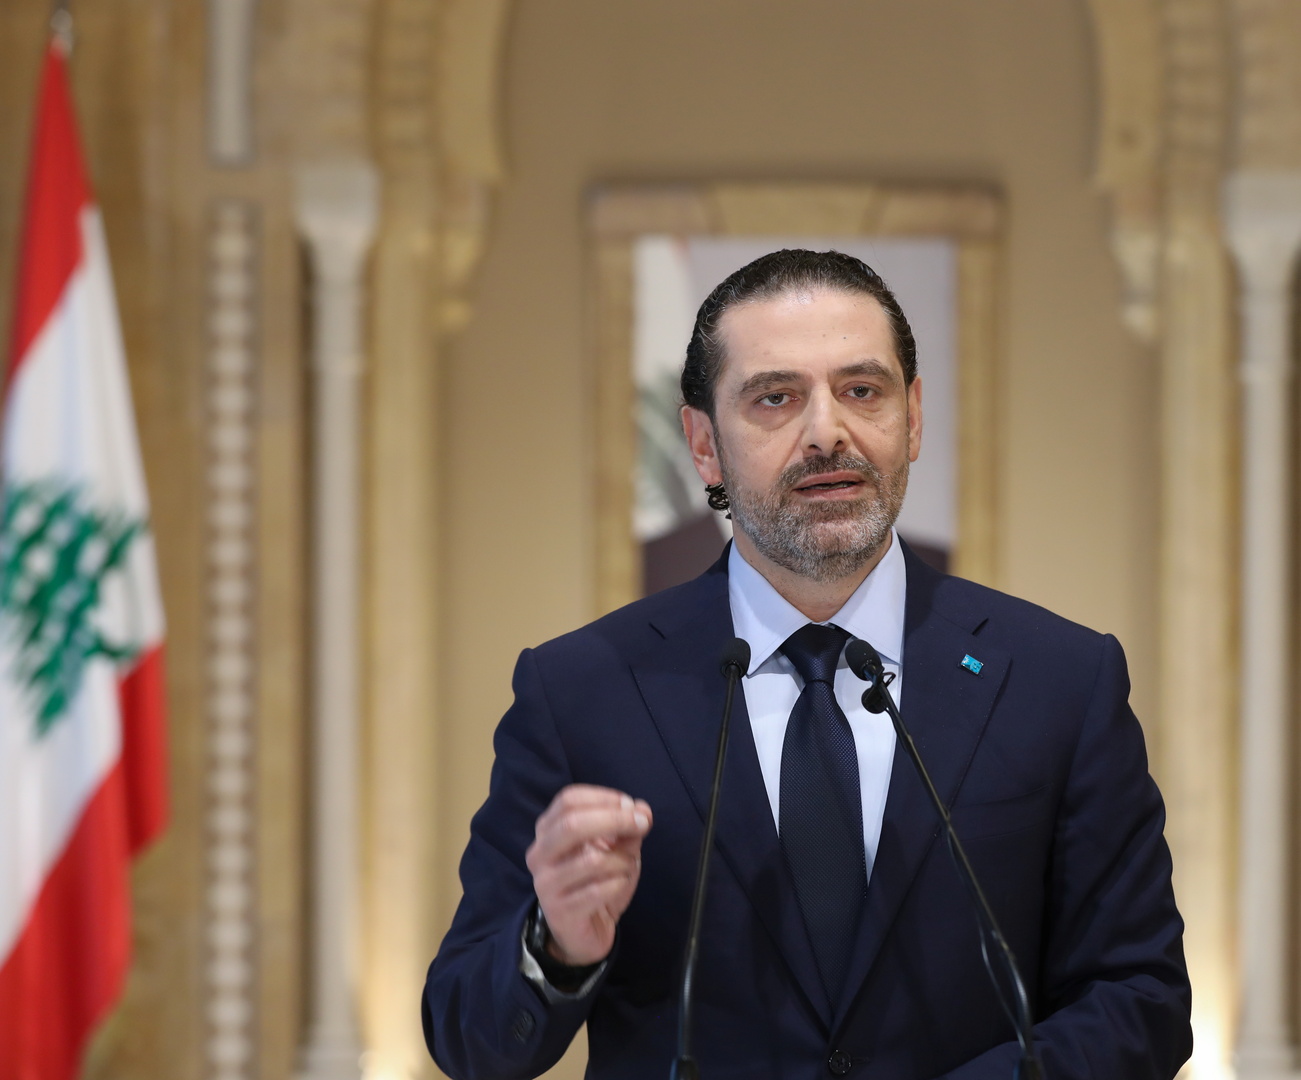 الأمم المتحدة: الاستقطاب السياسي يعيق الإصلاحات الرئيسية في لبنان